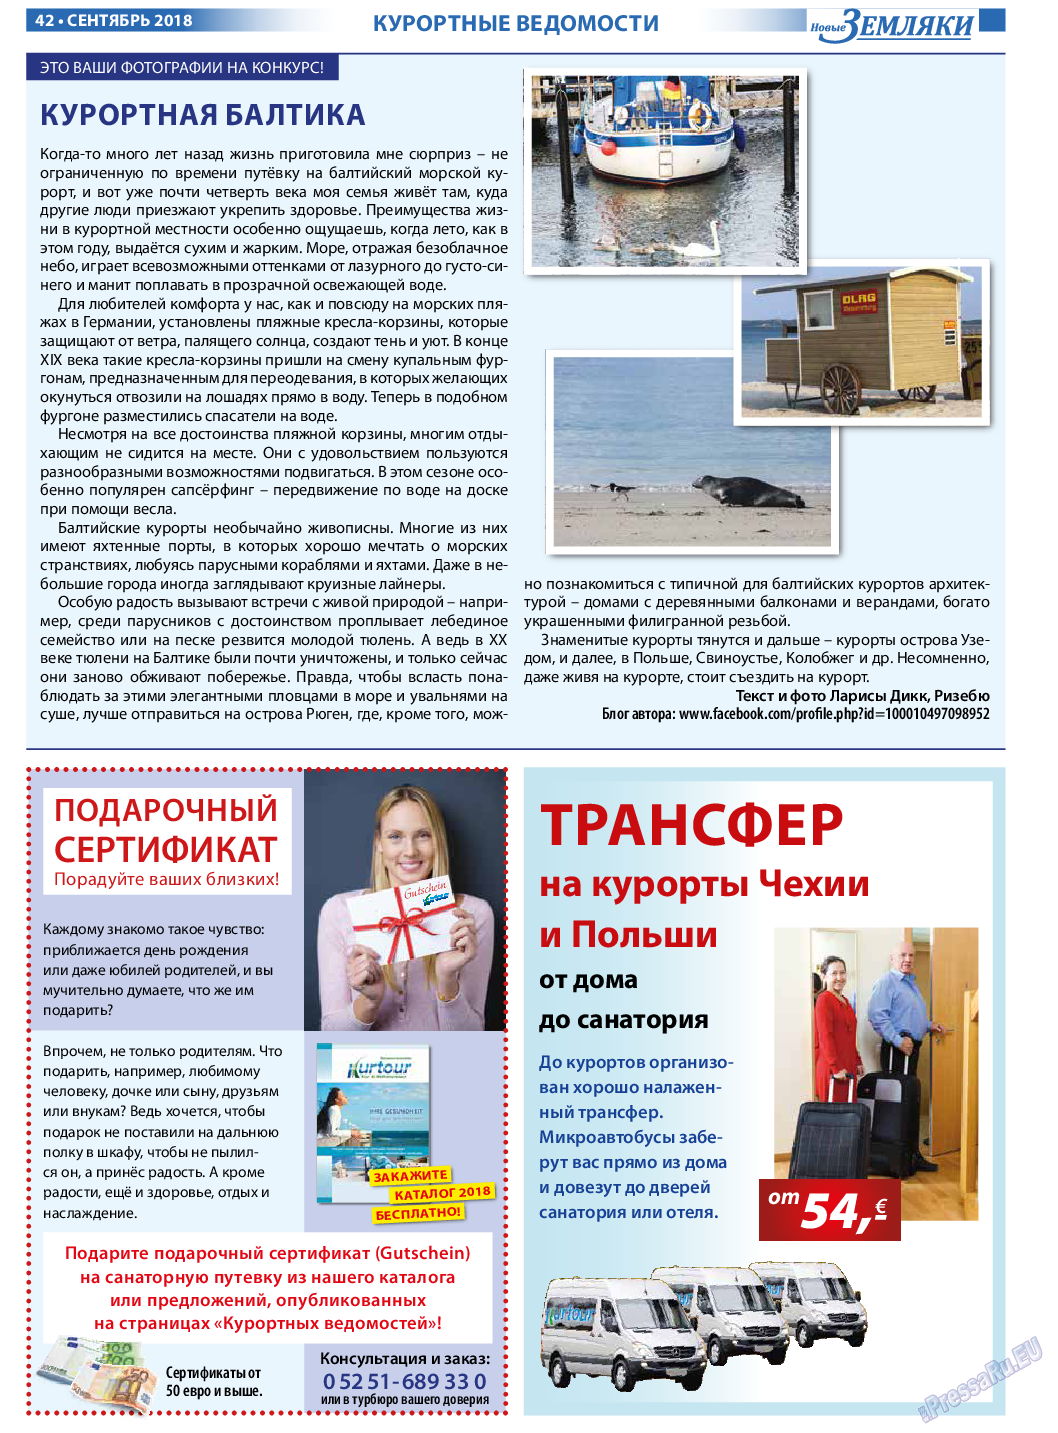 Новые Земляки (газета). 2018 год, номер 9, стр. 42